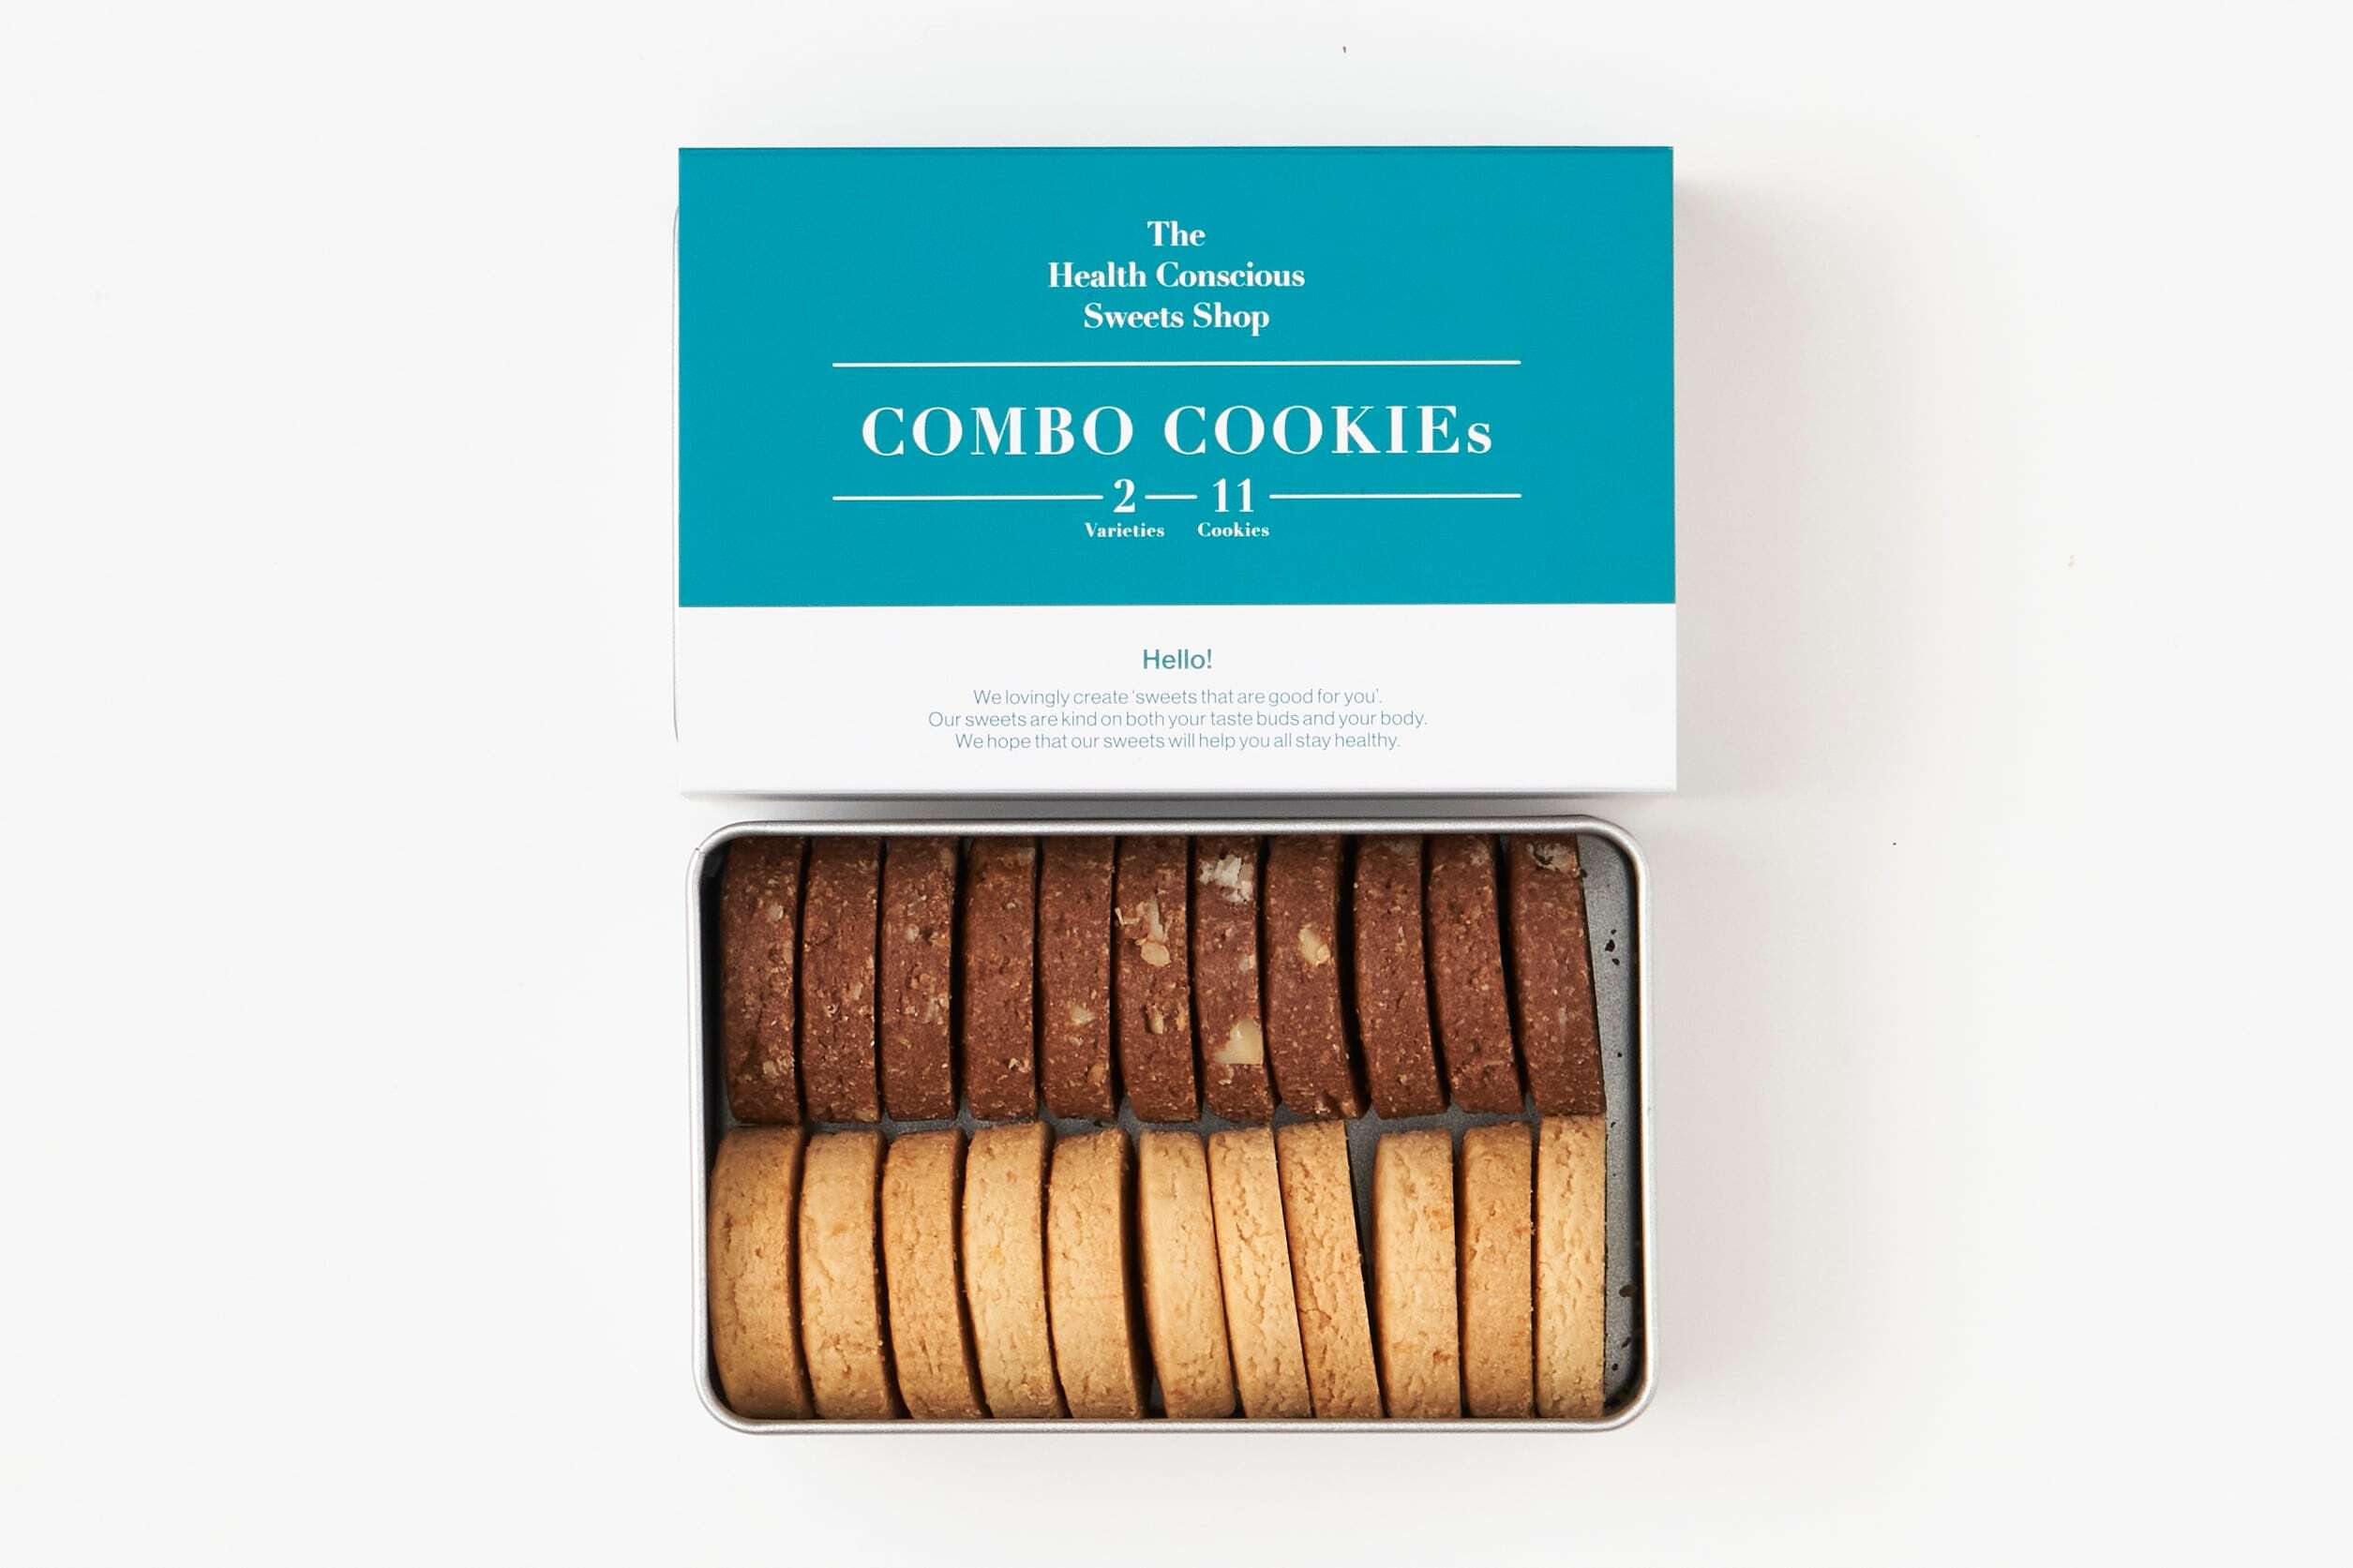 COMBO COOKIEs 2 varieties, 22 cookies / クッキー2種類詰め合わせ 22個入り